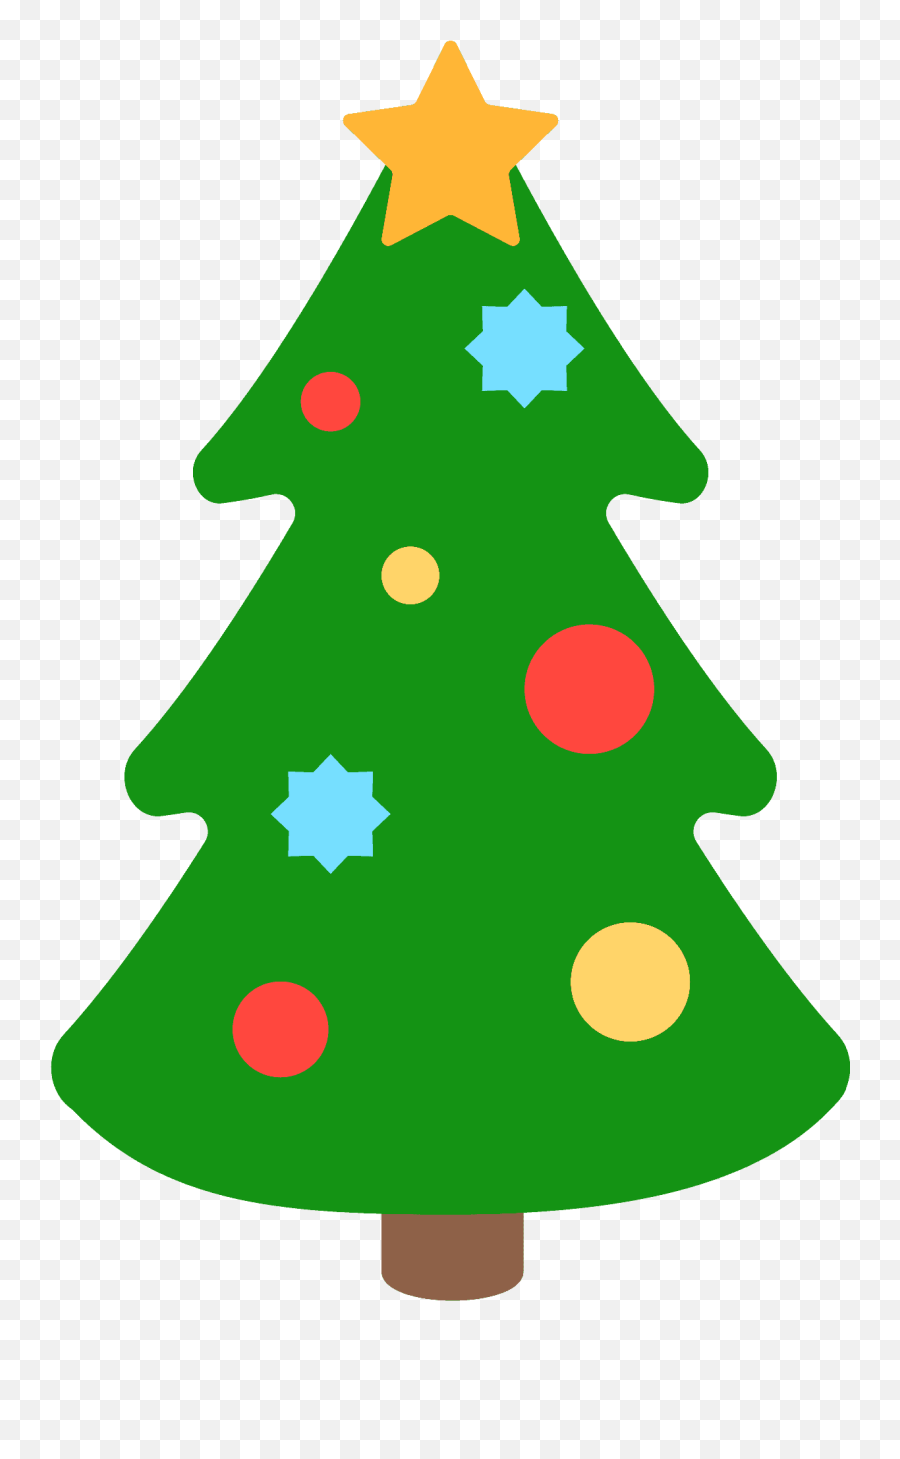 Christmas Tree Emoji - Christmas Tree Cartoon No Background,Christmas Tree Emoji